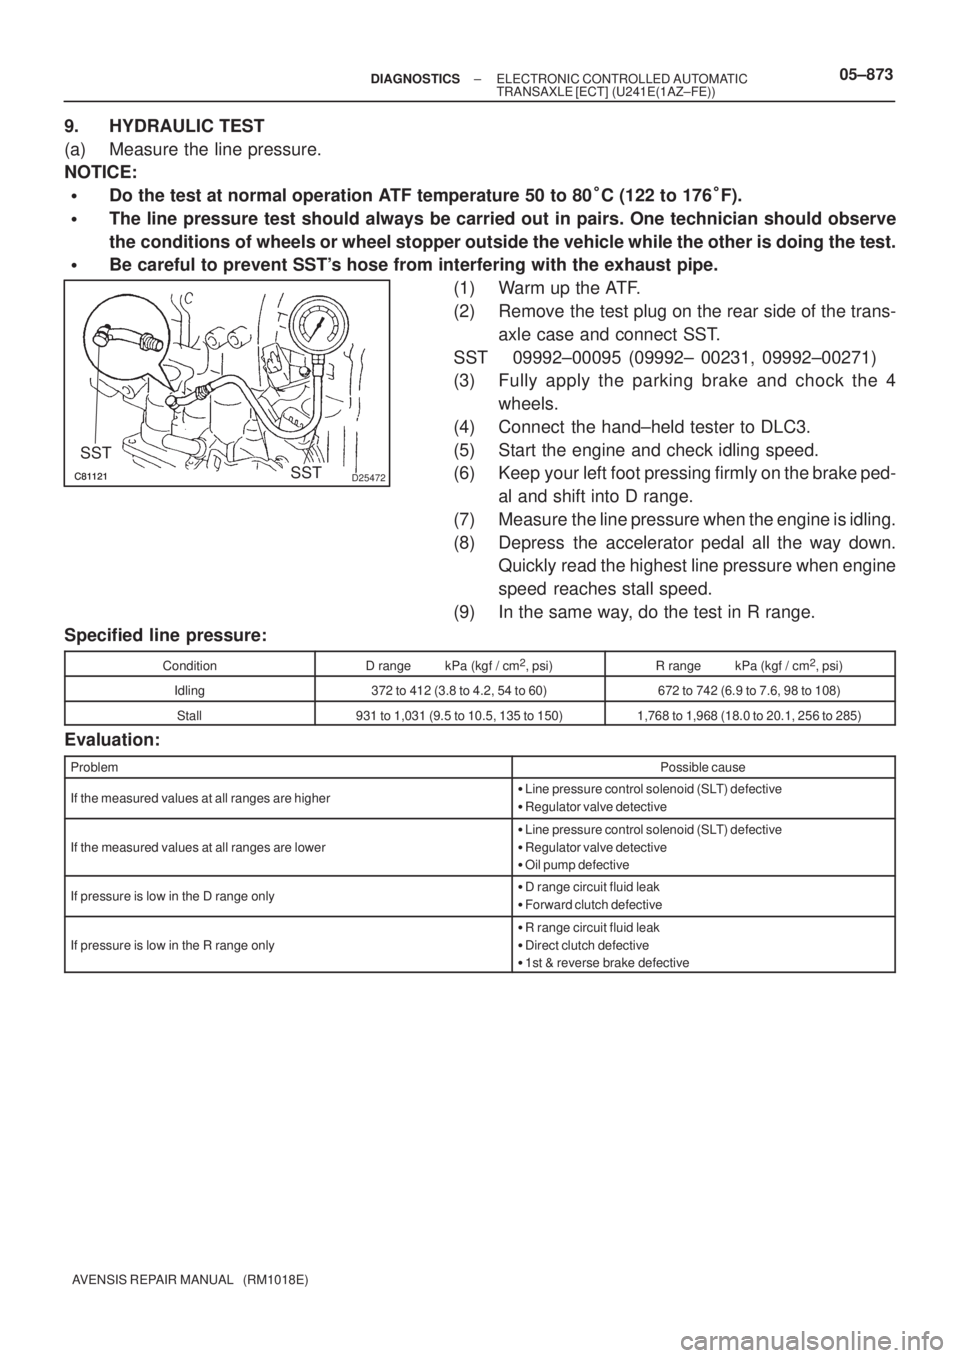 TOYOTA AVENSIS 2005  Service Repair Manual D25472
SST
SST
± DIAGNOSTICSELECTRONIC CONTROLLED AUTOMATIC
TRANSAXLE [ECT] (U241E(1AZ±FE))05±873
AVENSIS REPAIR MANUAL   (RM1018E)
9. HYDRAULIC TEST
(a) Measure the line pressure